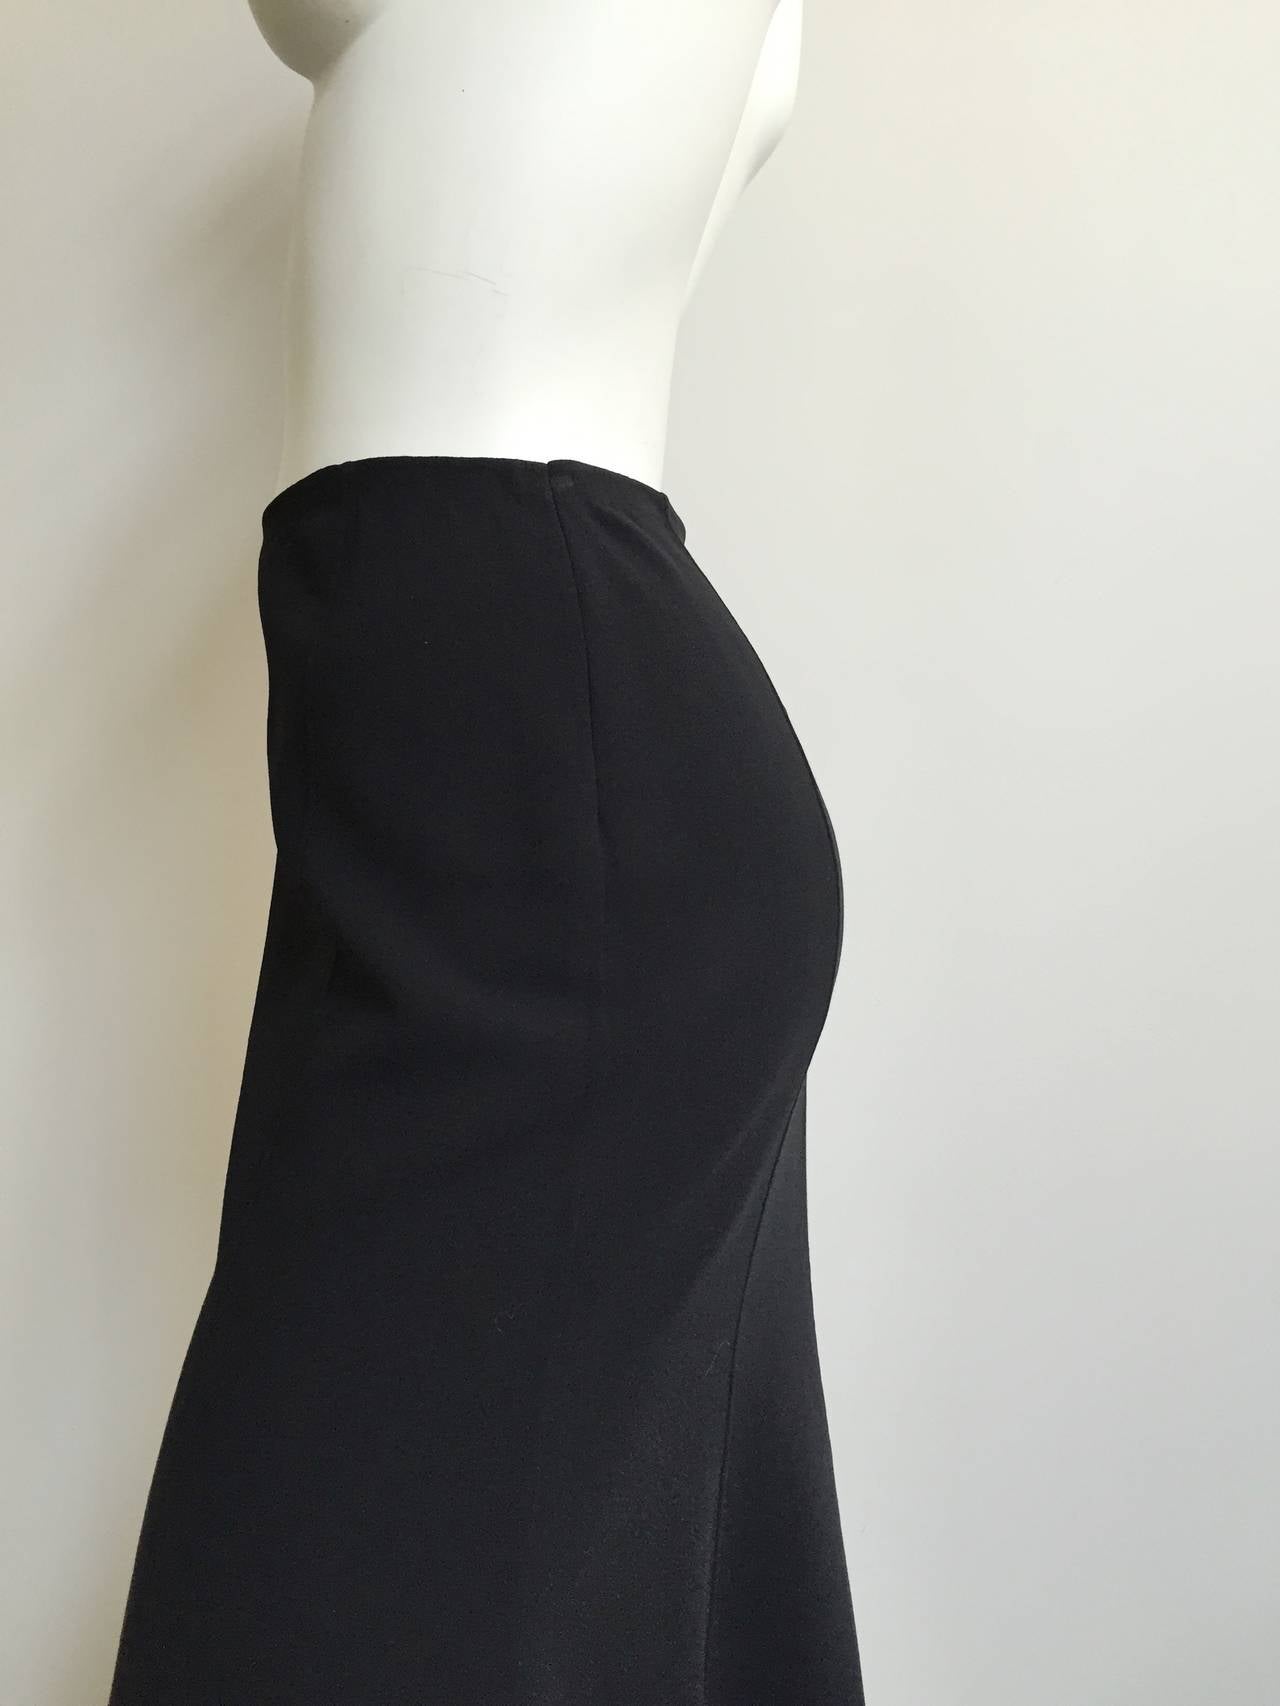 Women's Celine black wool skirt size 4/6.